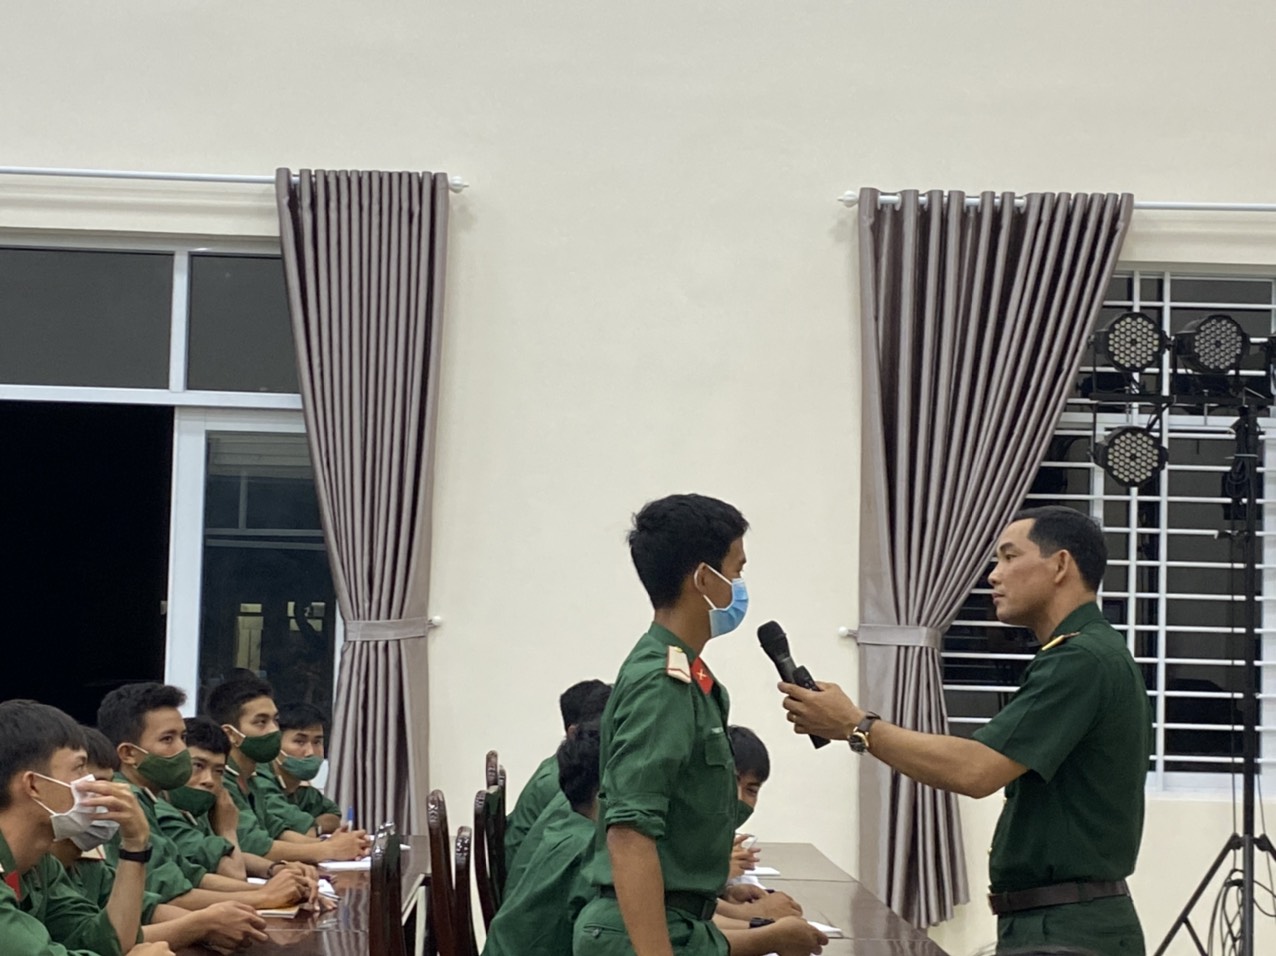 Thiếu tá Bùi Lâm Triều giao lưu với chiến sĩ trẻ trong một buổi nói chuyện chuyên đề về chính trị.